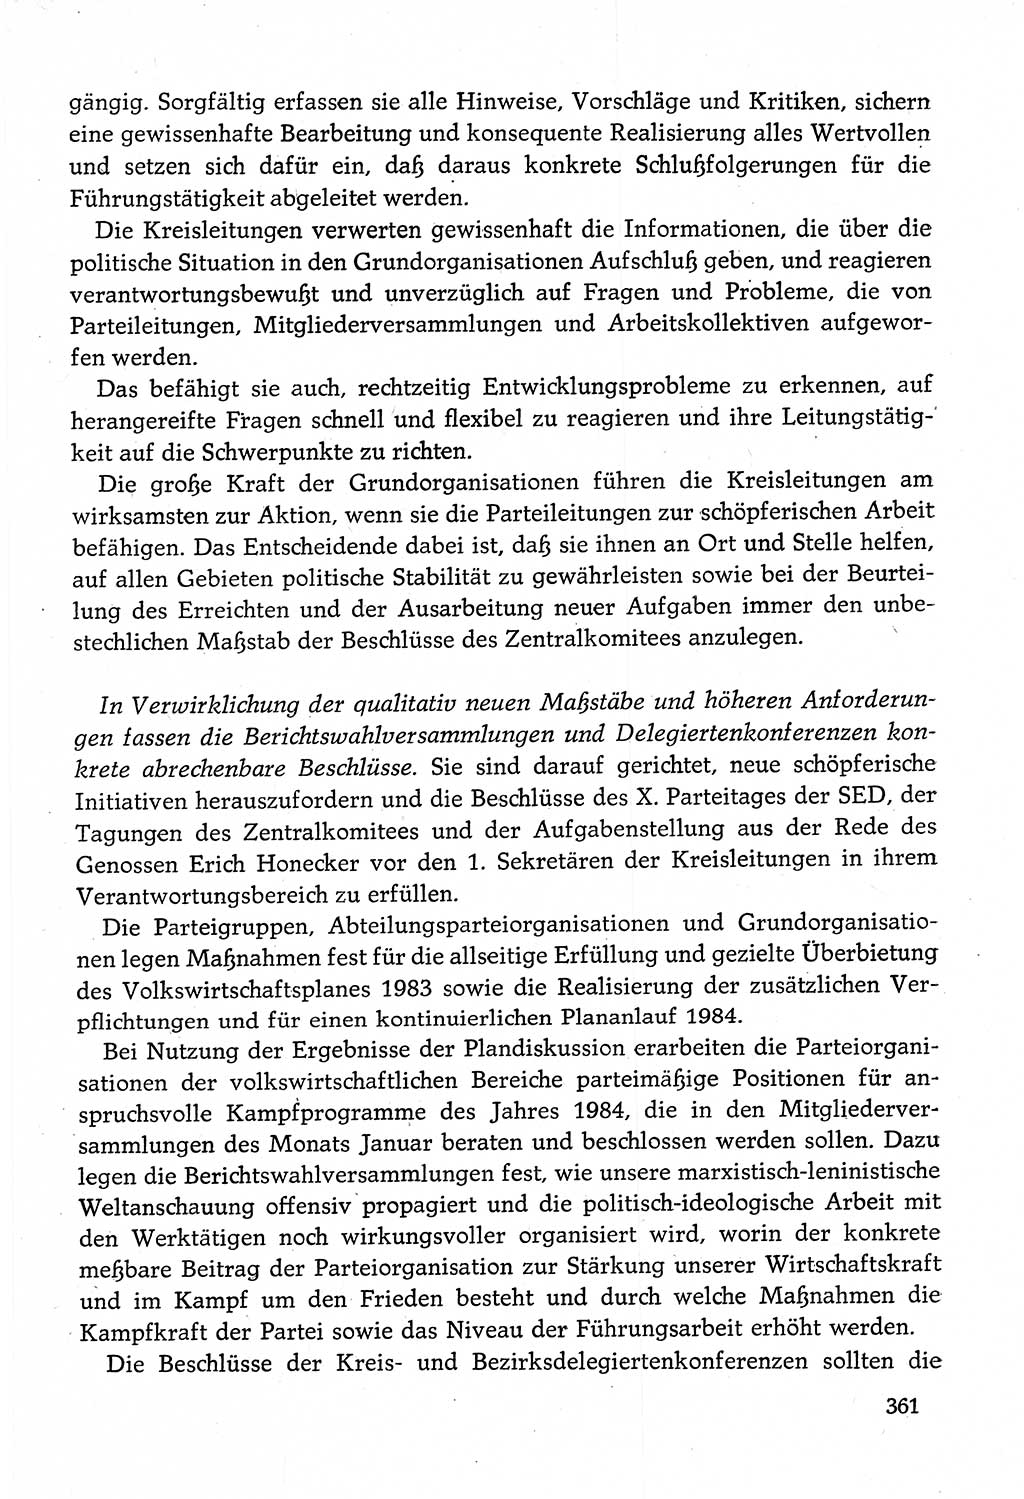 Dokumente der Sozialistischen Einheitspartei Deutschlands (SED) [Deutsche Demokratische Republik (DDR)] 1982-1983, Seite 361 (Dok. SED DDR 1982-1983, S. 361)